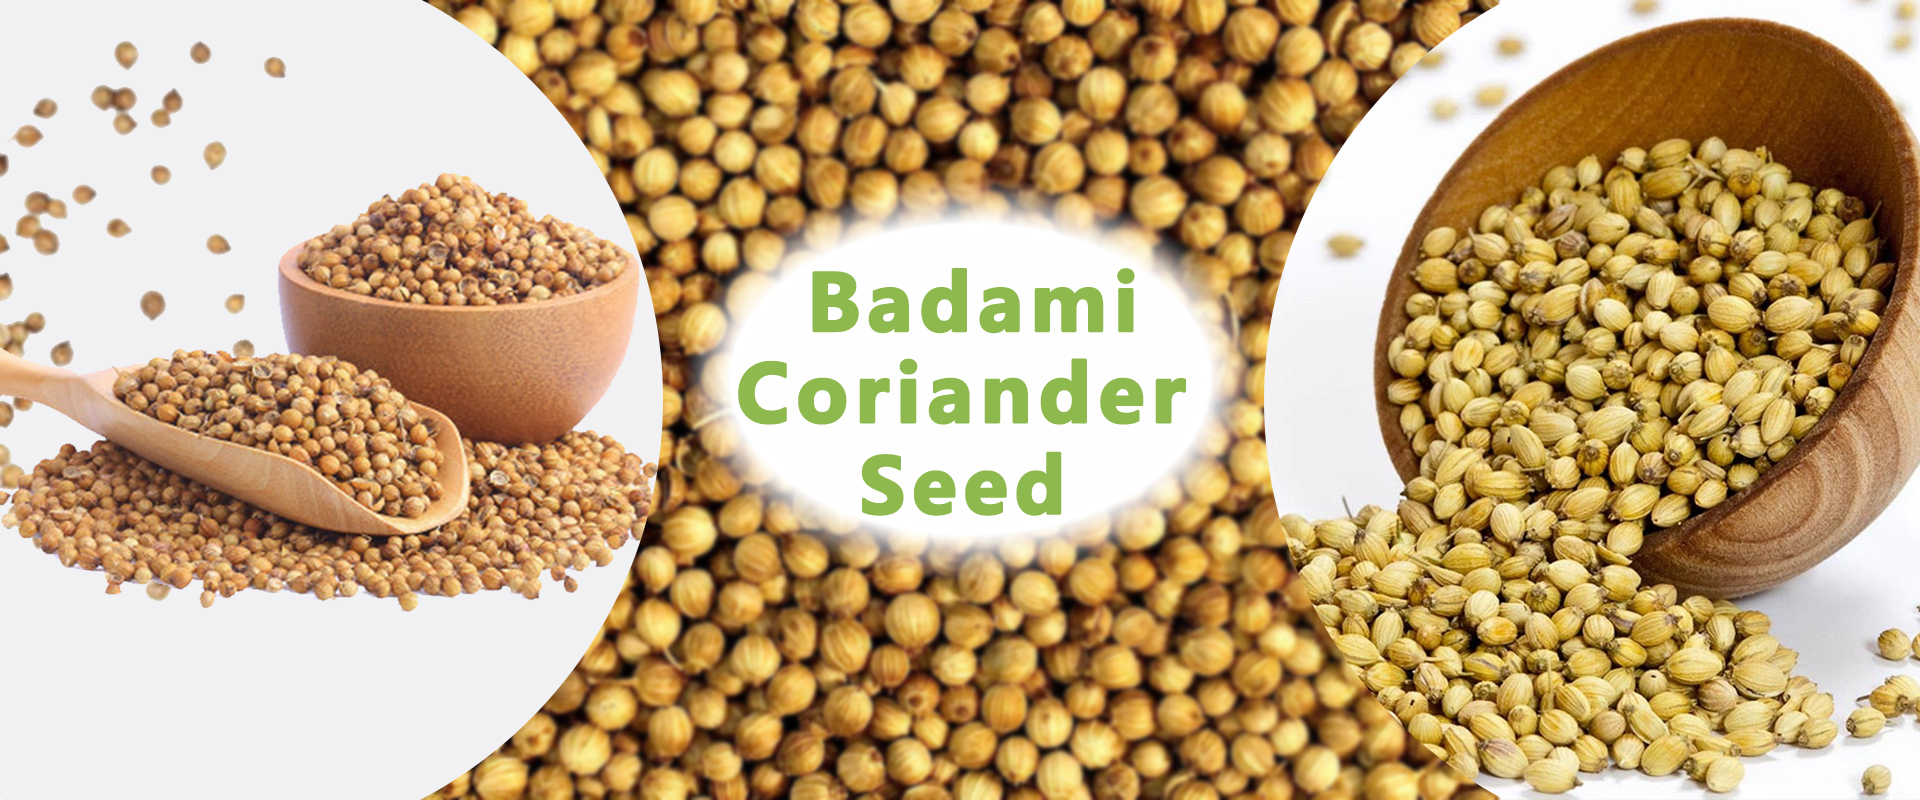 Badami Coriander Seed